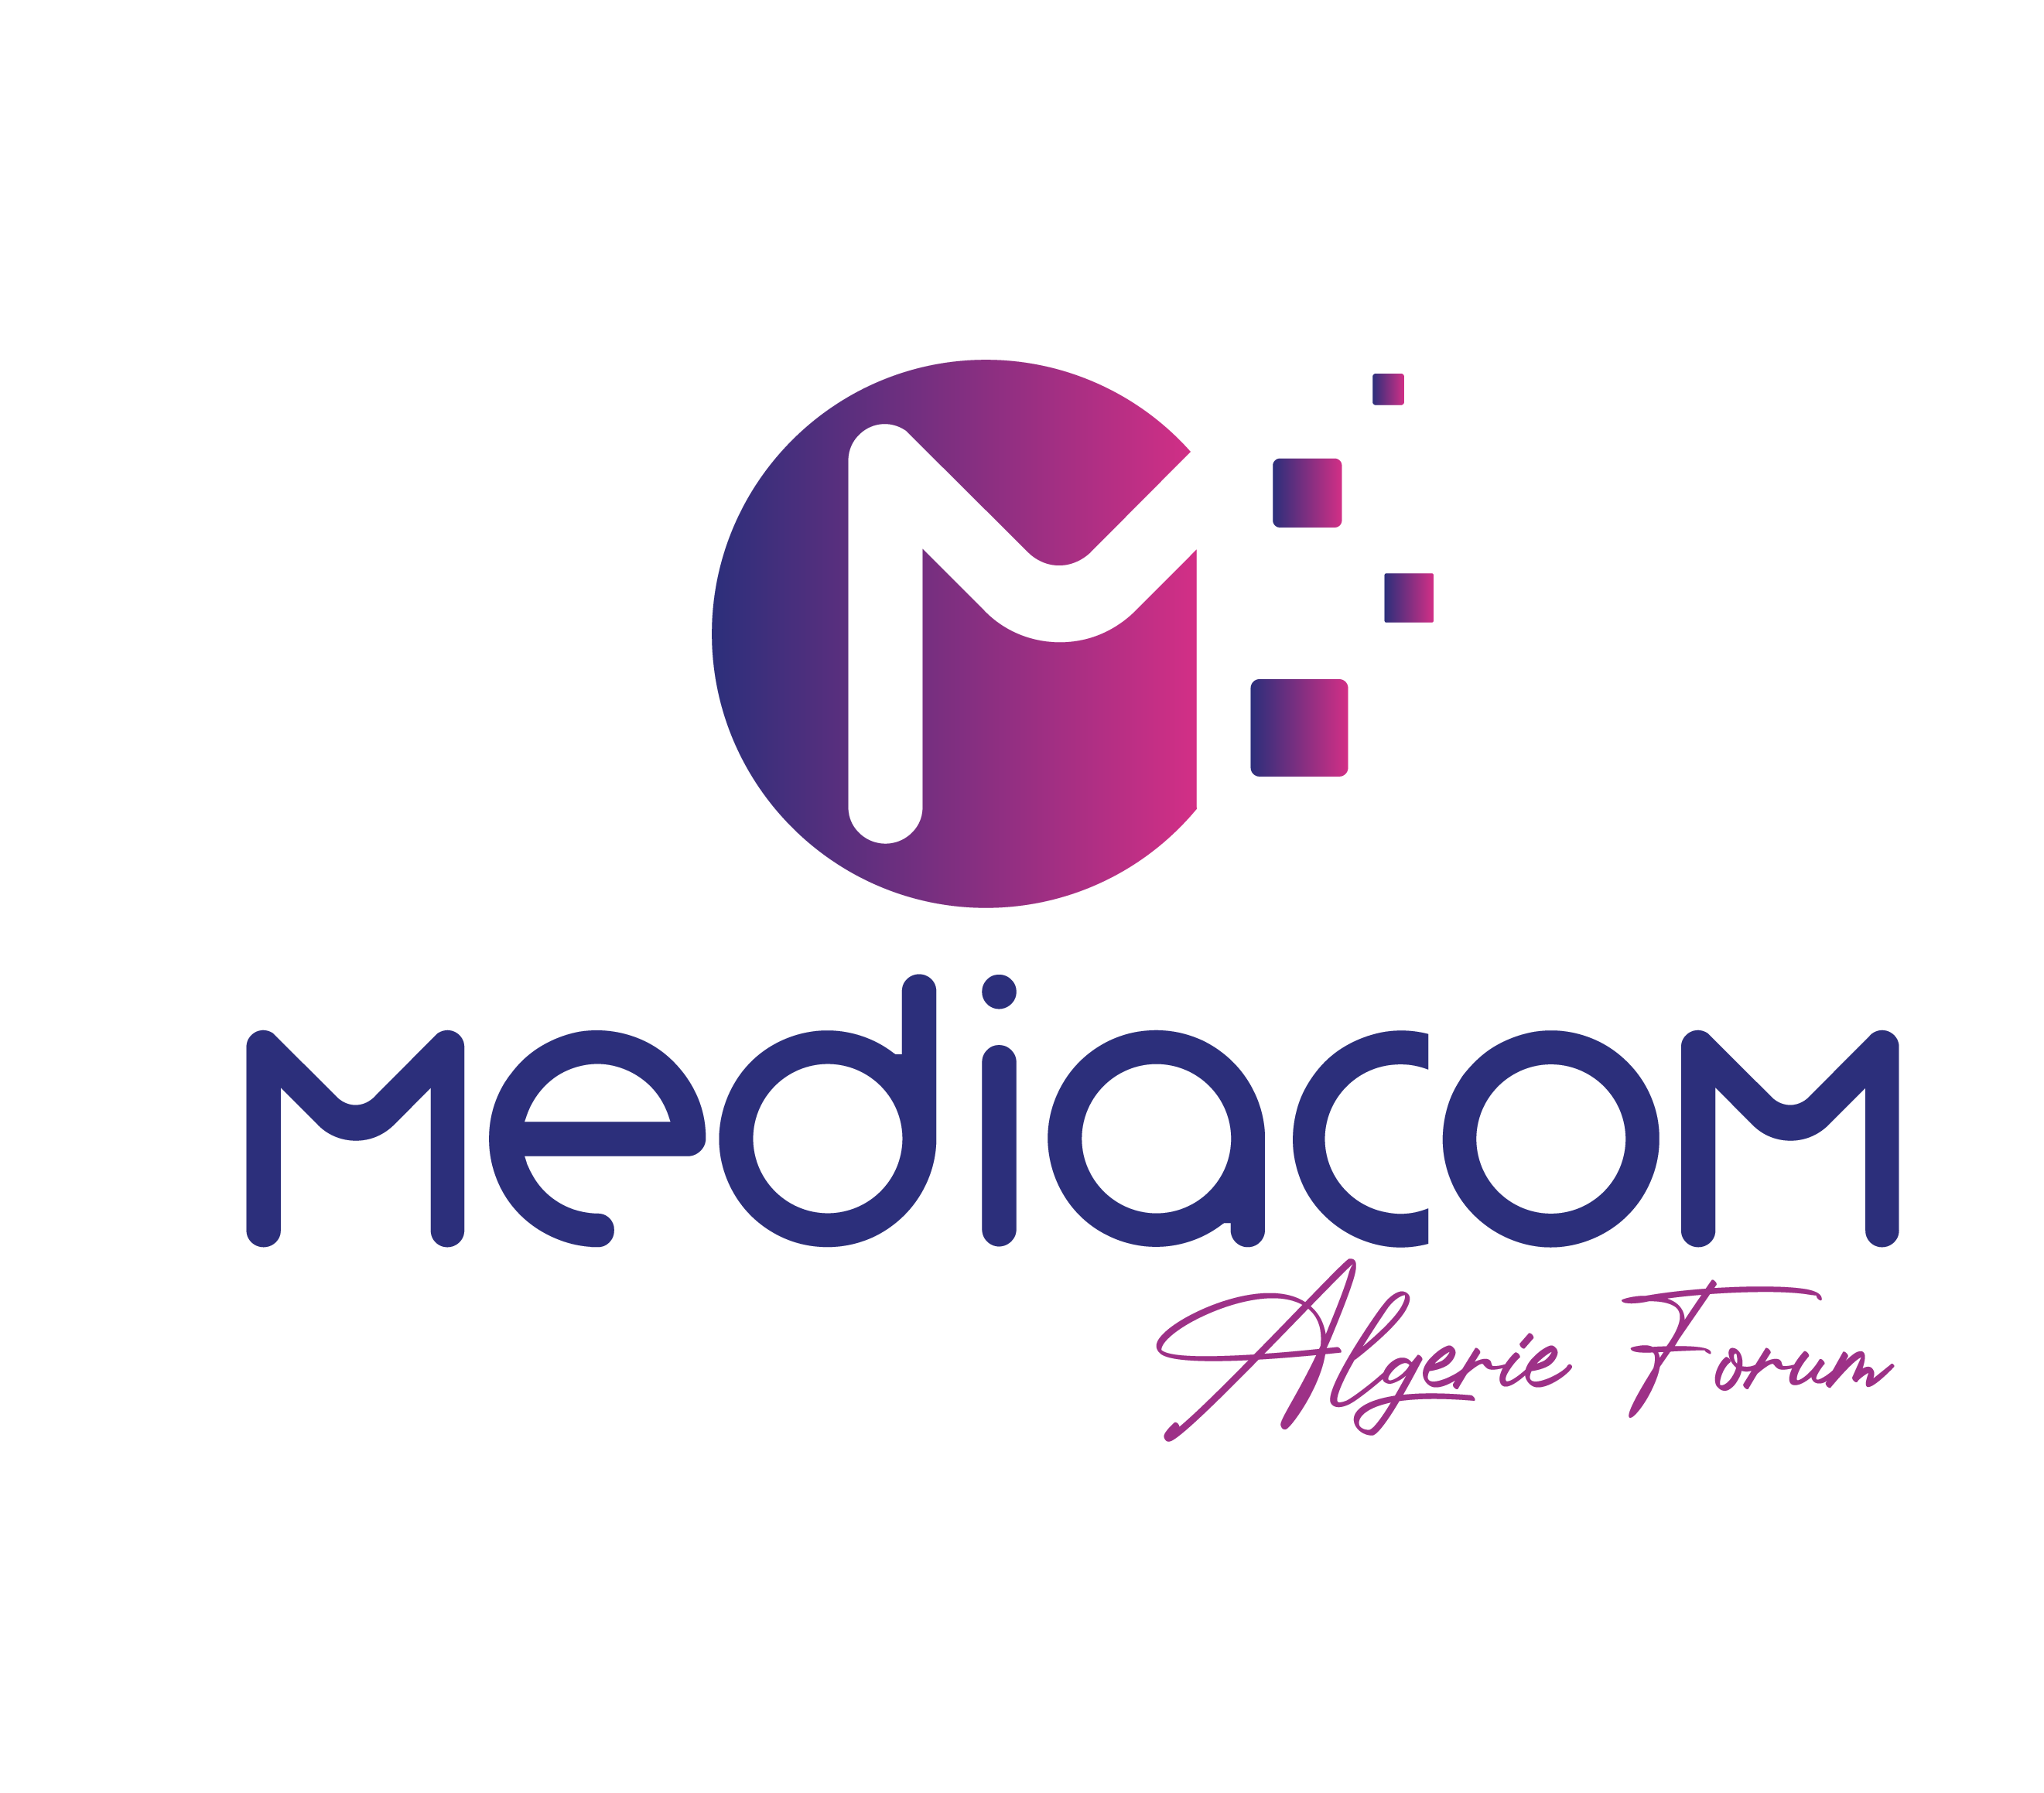 mediacom algeria forum